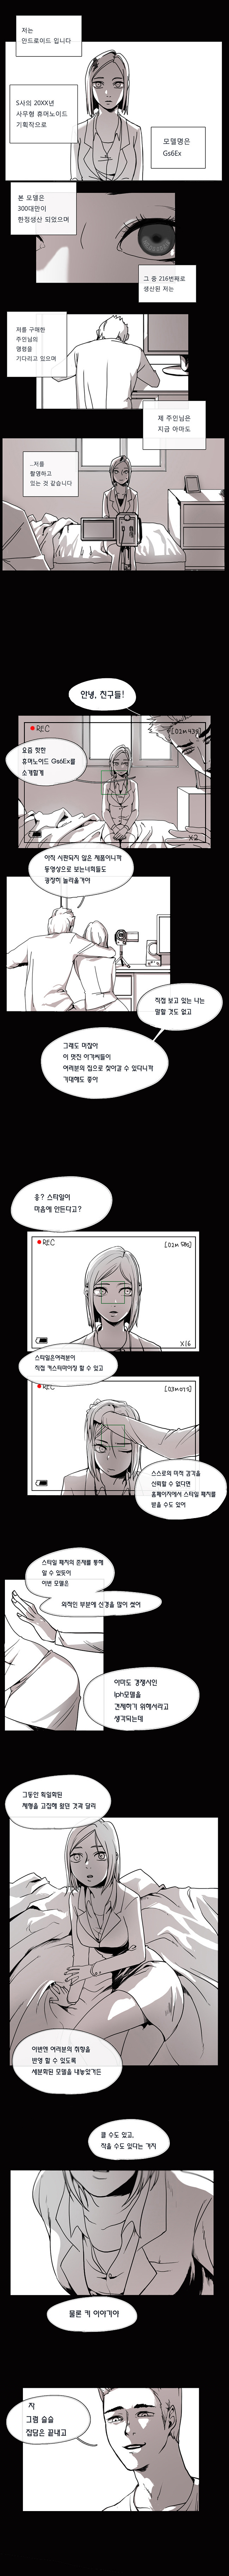 여성형 안드로이드와 스트리머 만화1.jpg